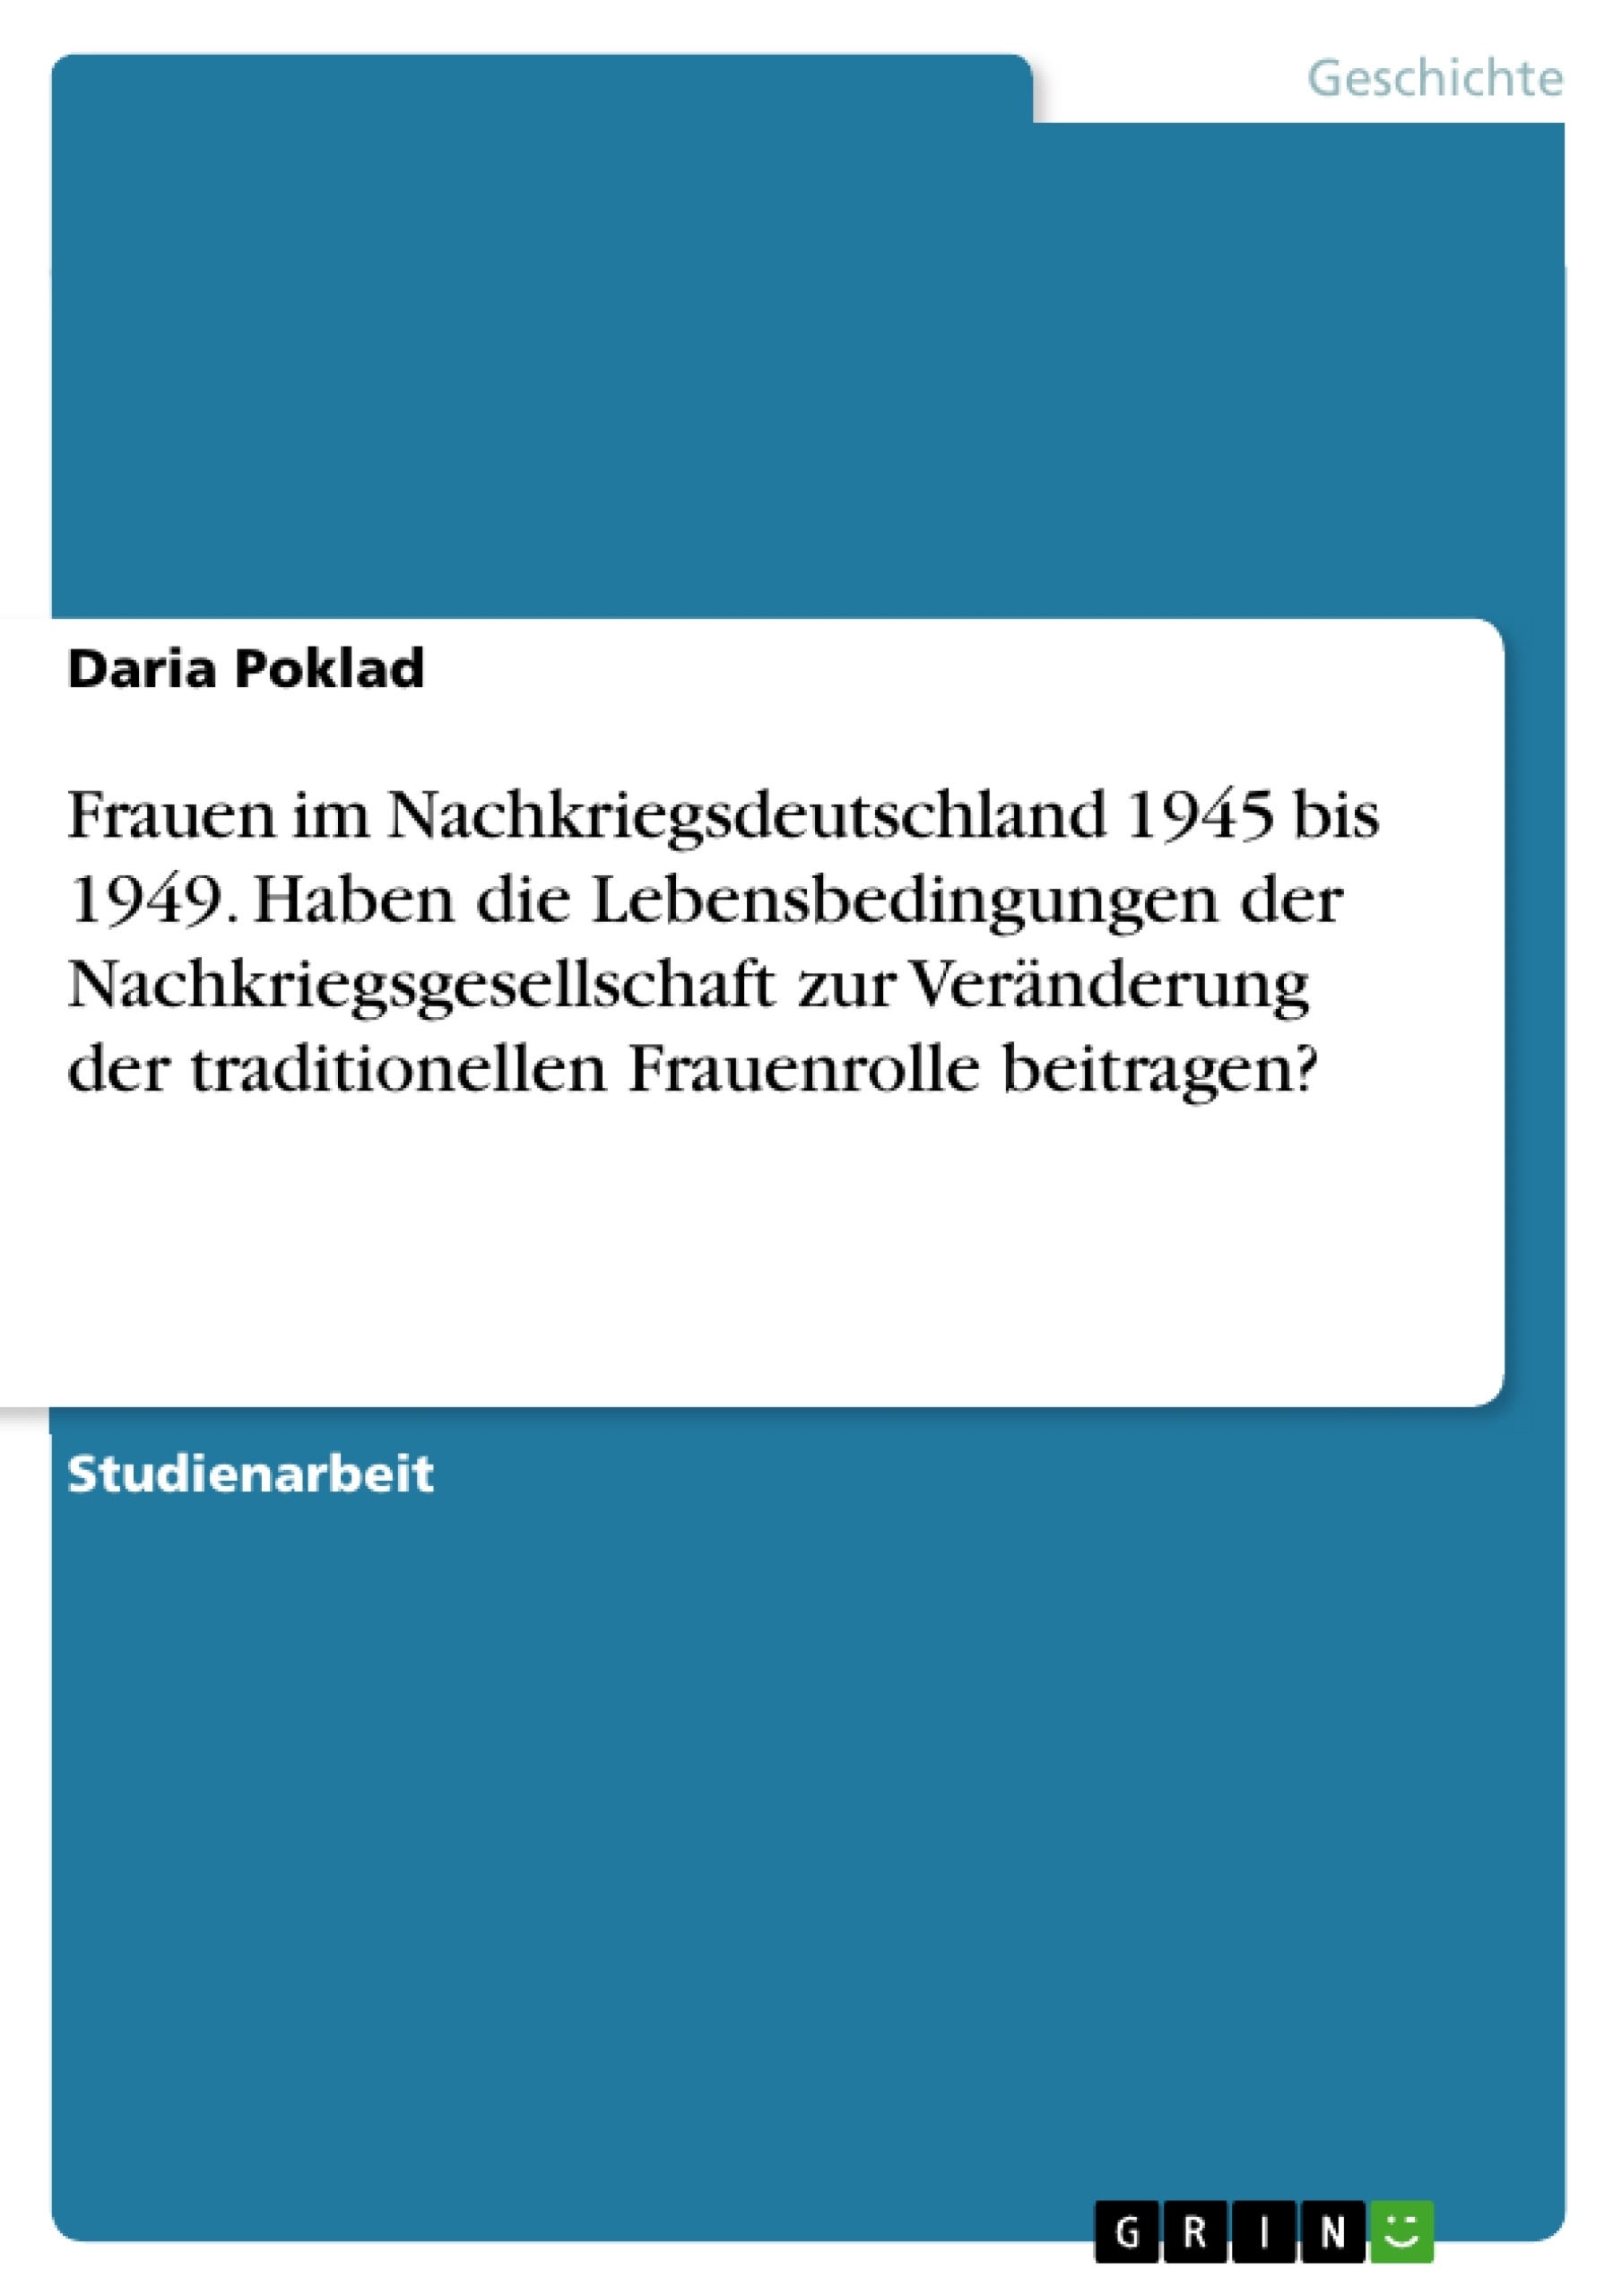 Title: Frauen im Nachkriegsdeutschland 1945 bis 1949. Haben die Lebensbedingungen der Nachkriegsgesellschaft zur Veränderung der traditionellen Frauenrolle beitragen?